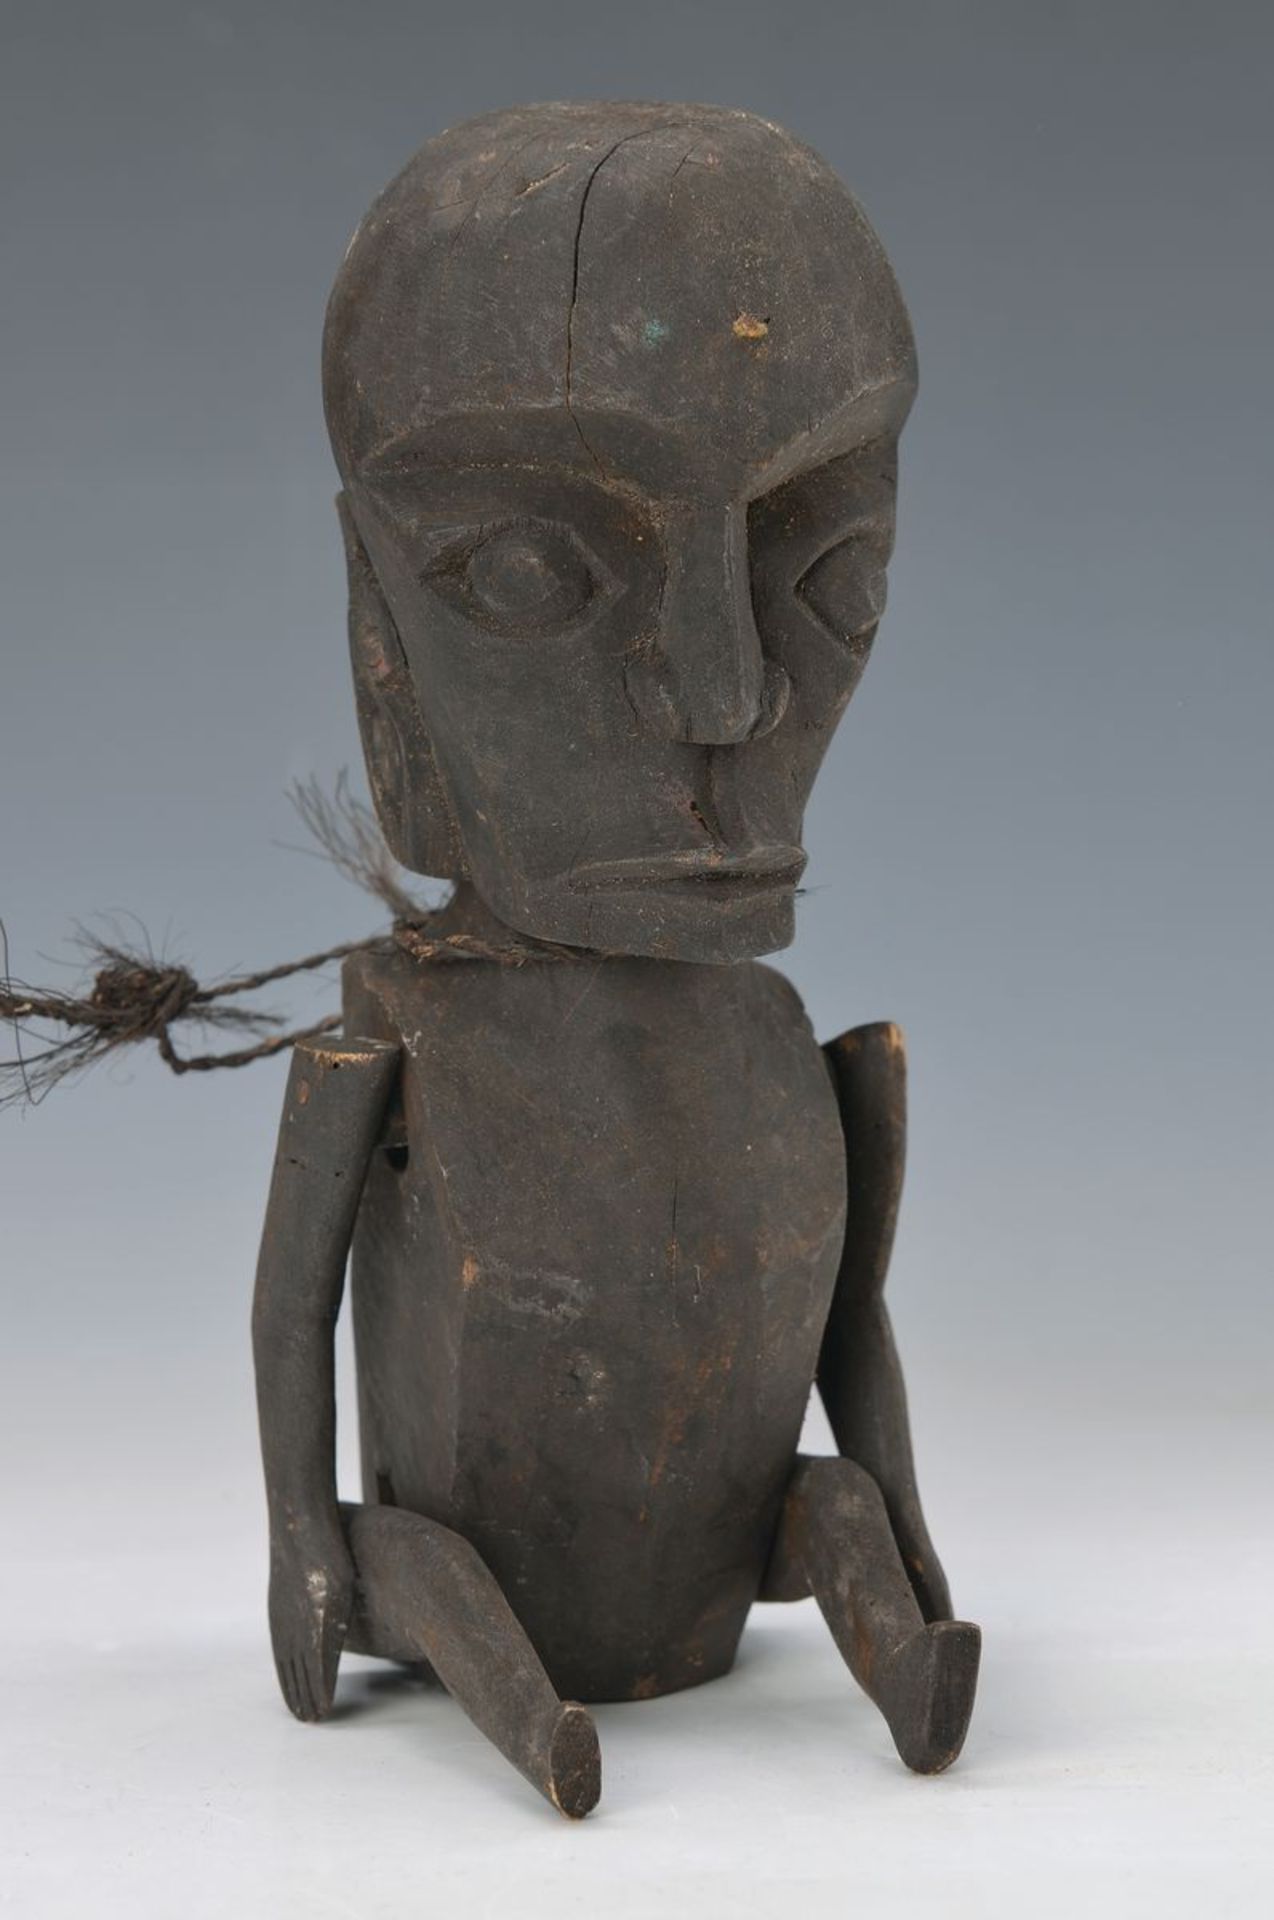 Ahnenfigur der Ekoi, Westafrika, ca. 60-70 Jahre alt, Holz geschnitzt mit beweglichen Armen und